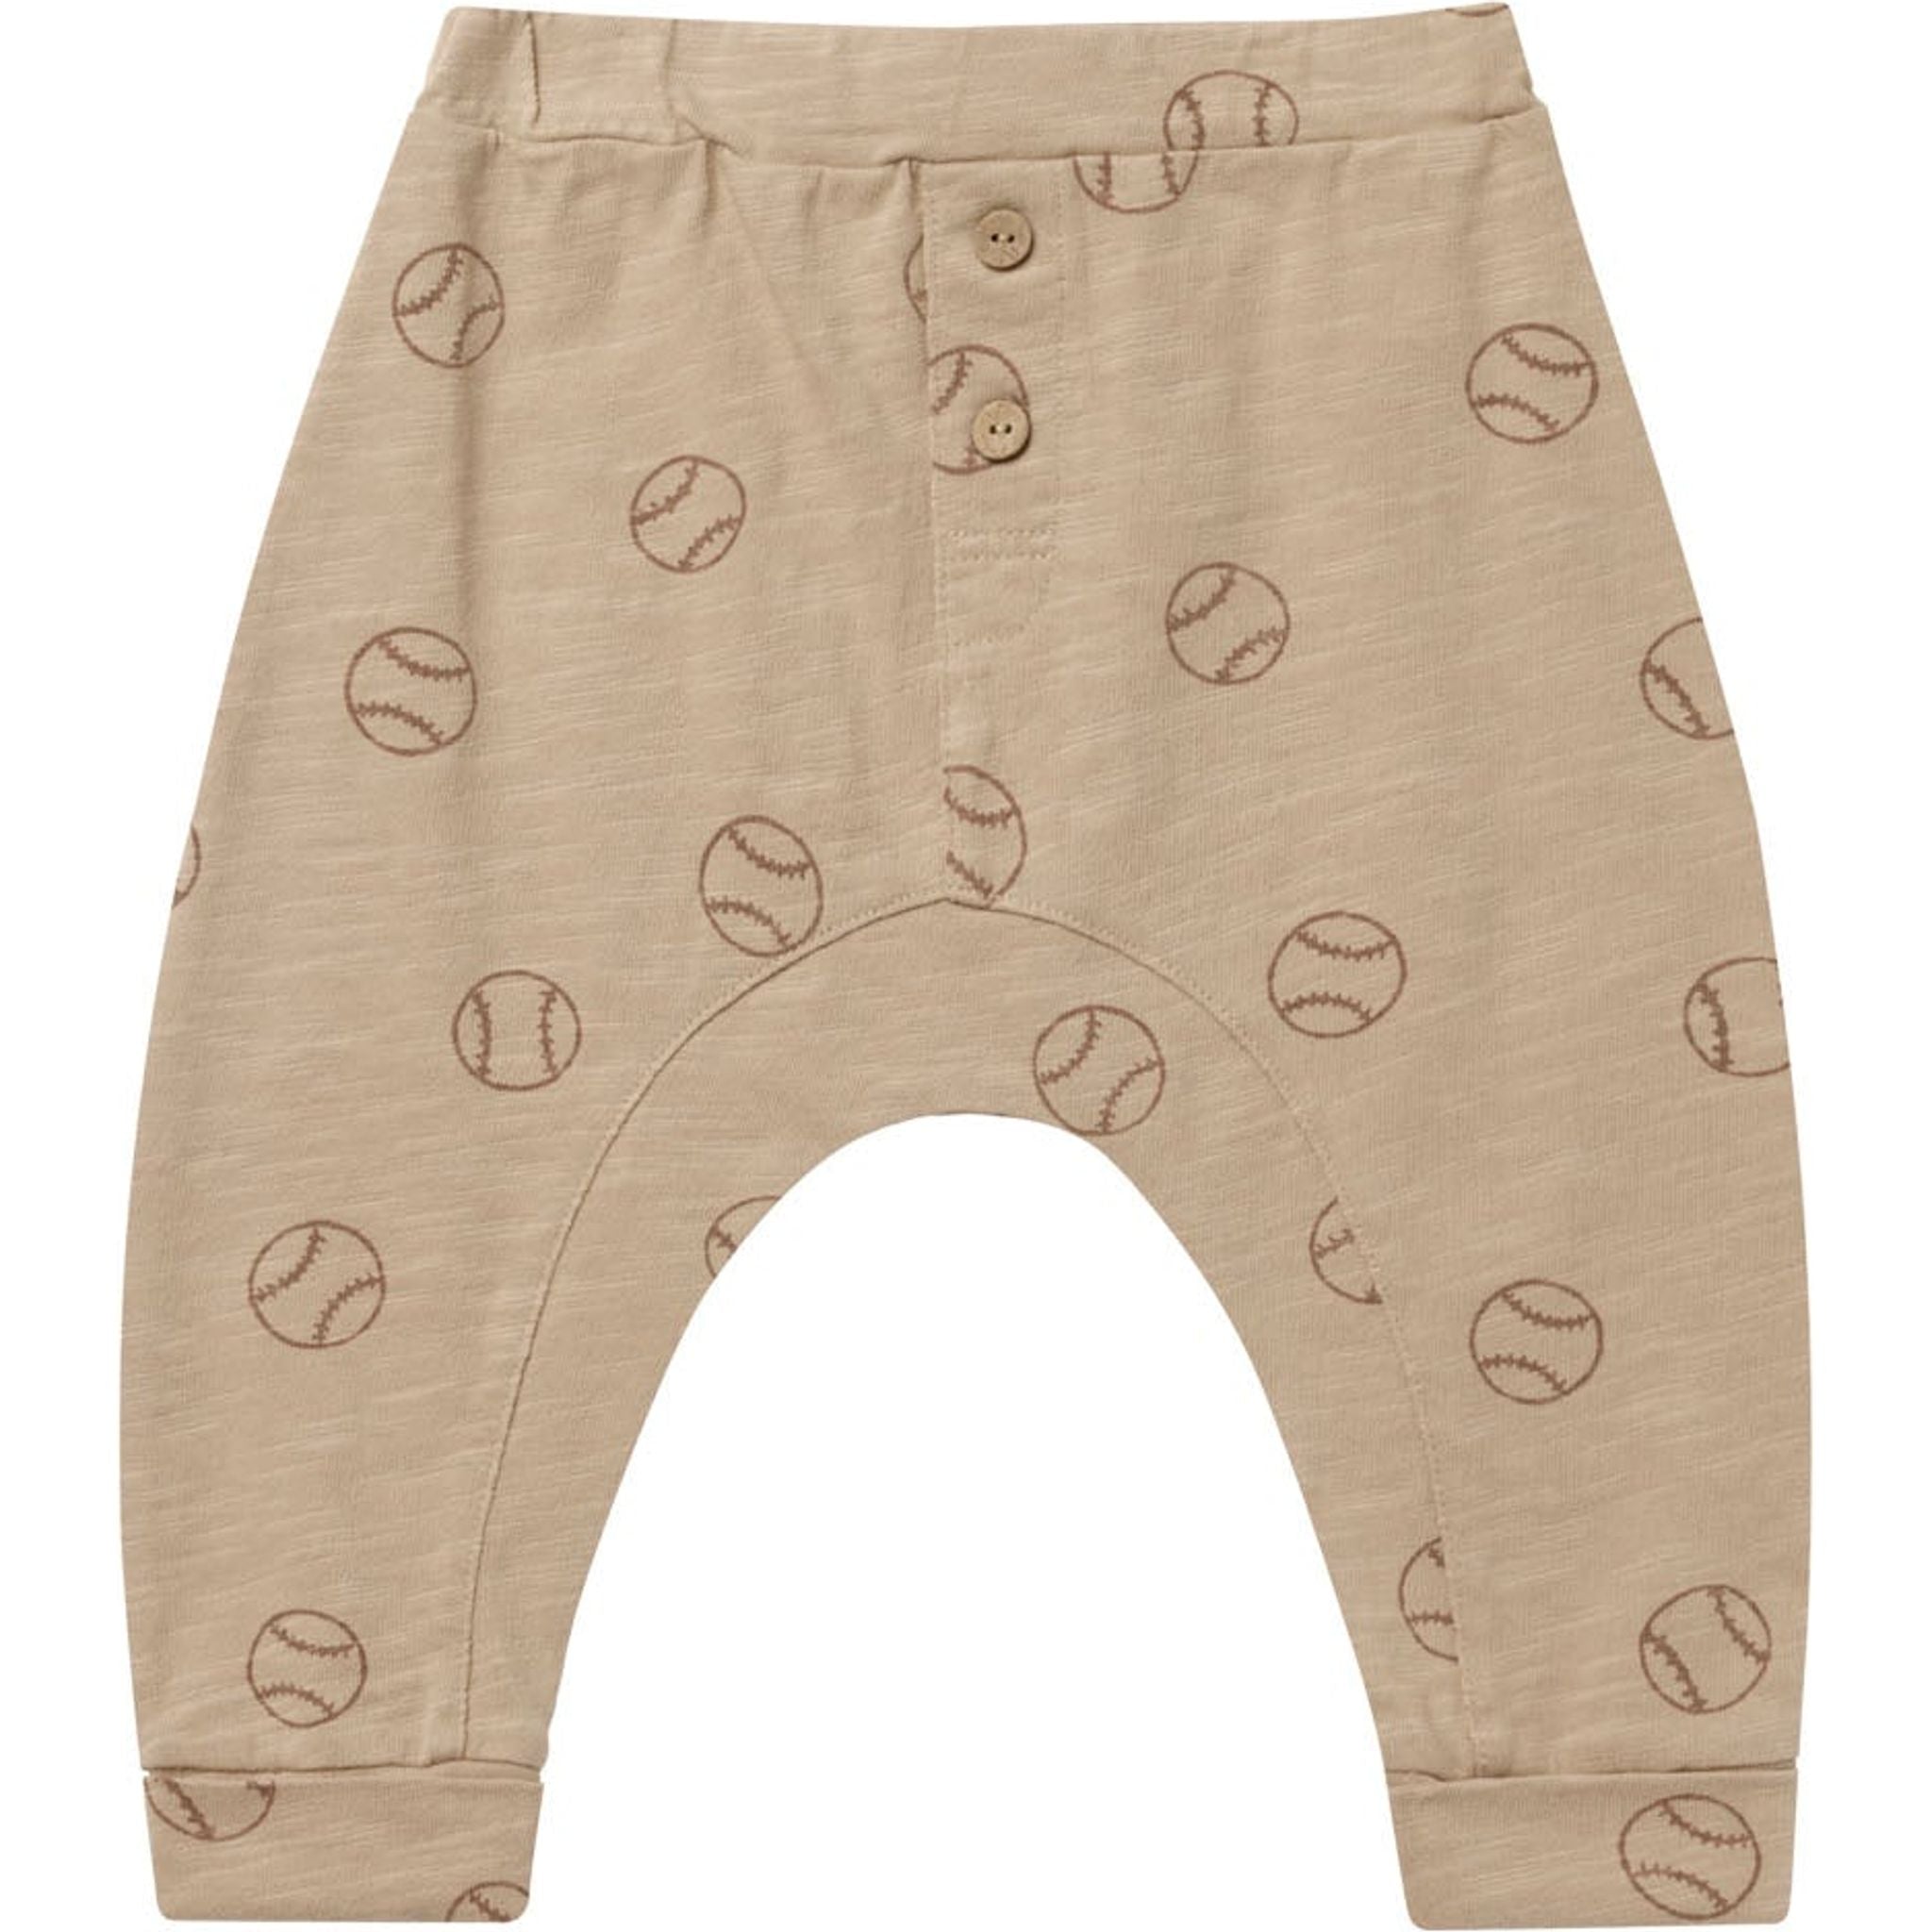 sand colored knit slub pants with all over baseball pants 